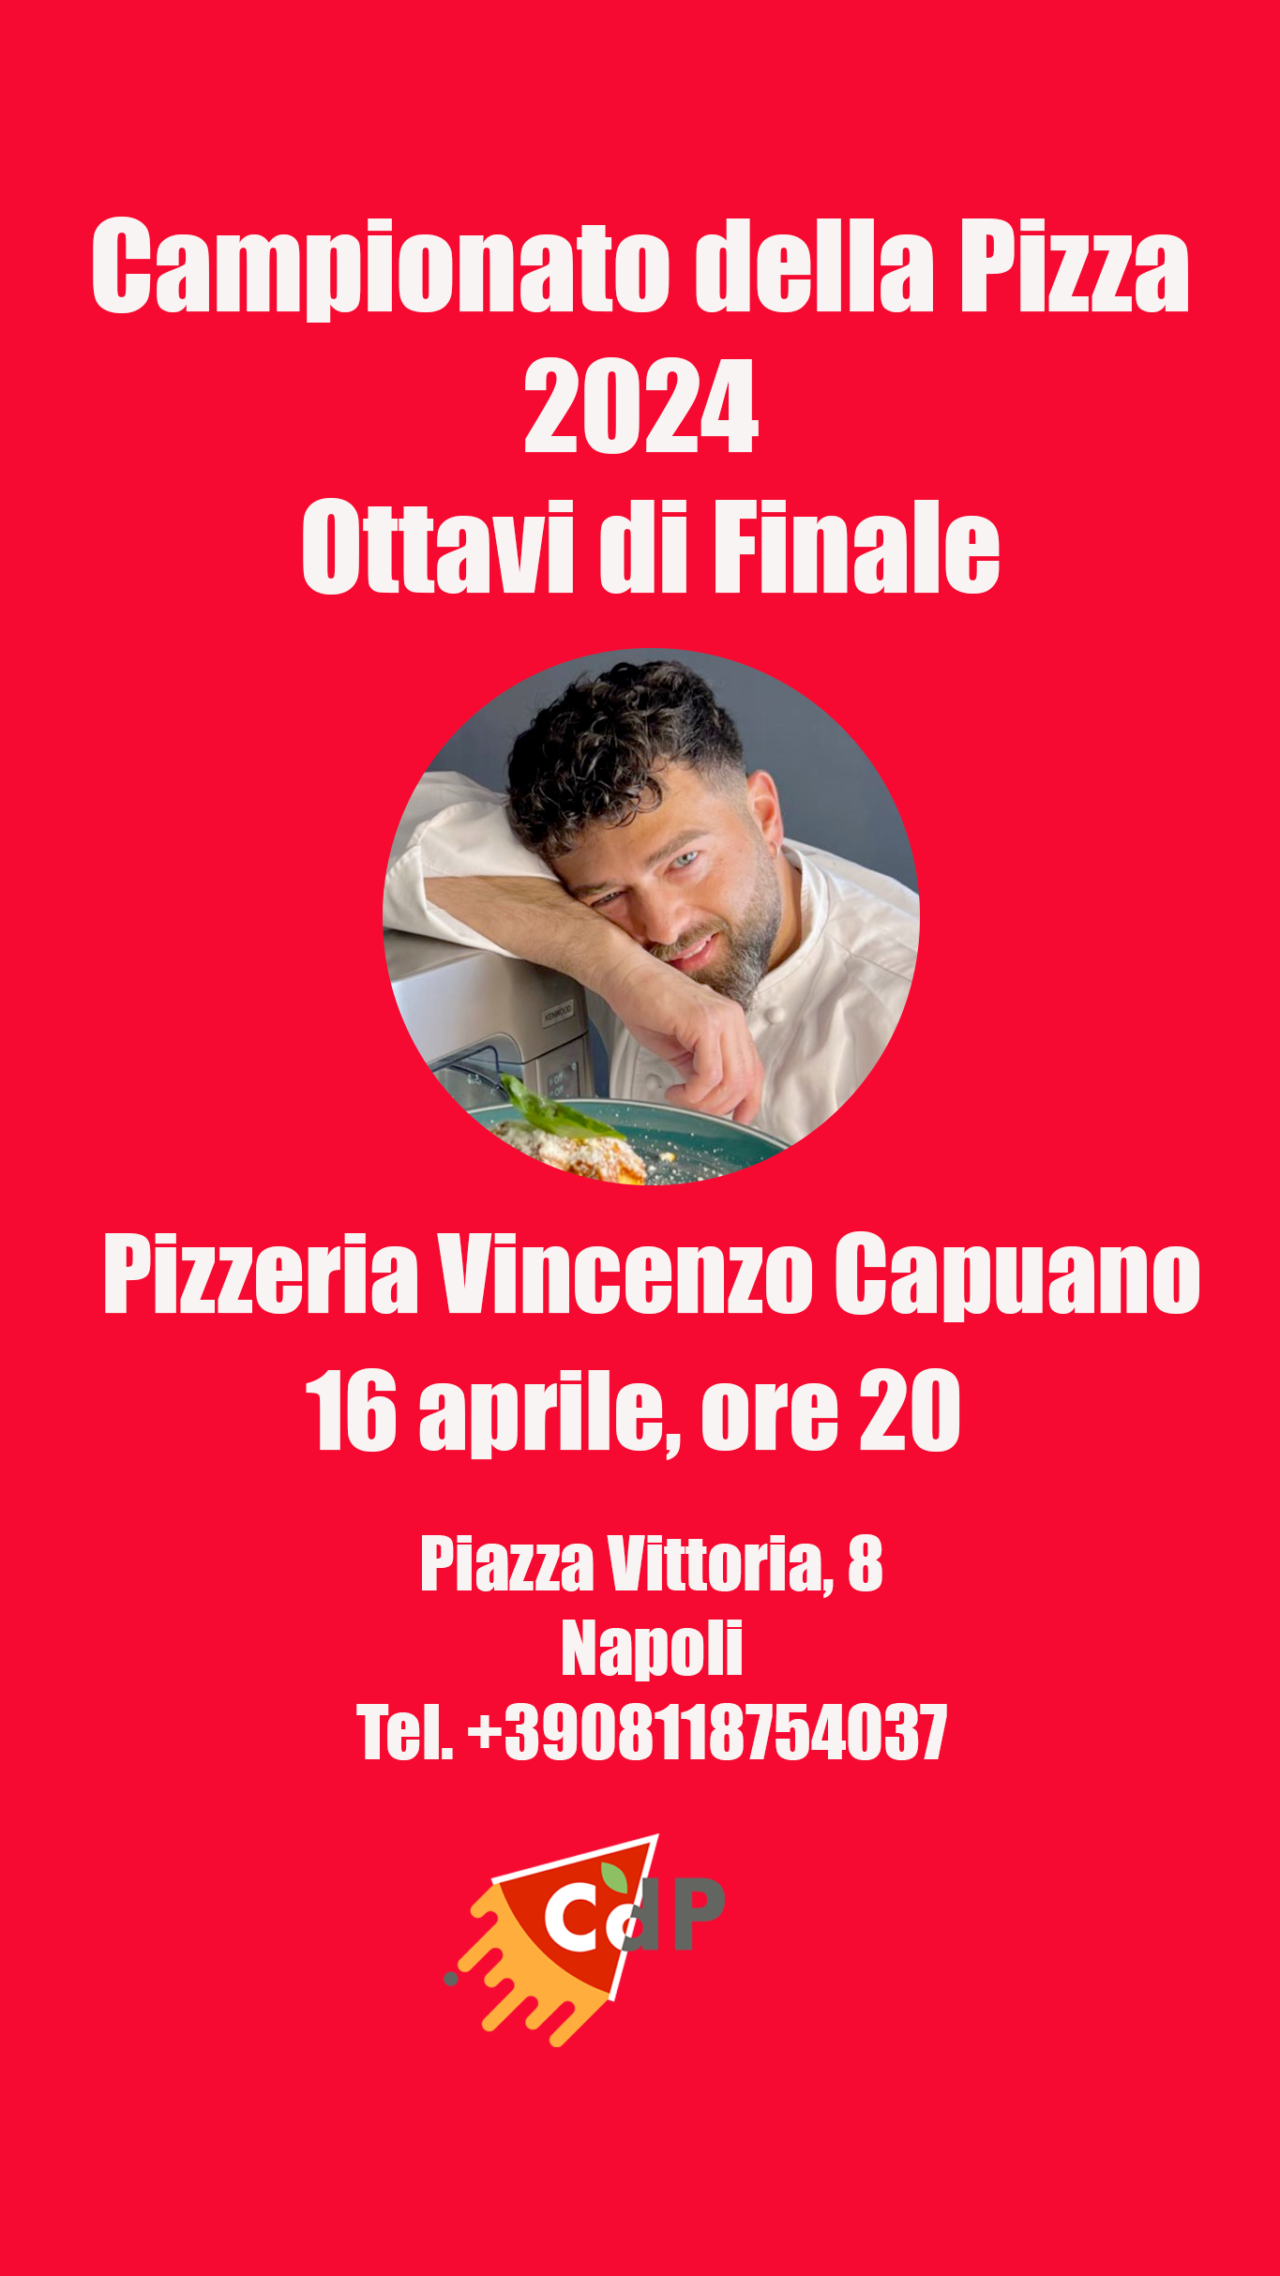 Le migliori pizzerie della Campania negli Ottavi di Finale del Campionato della Pizza 2024: Vincenzo Capuano